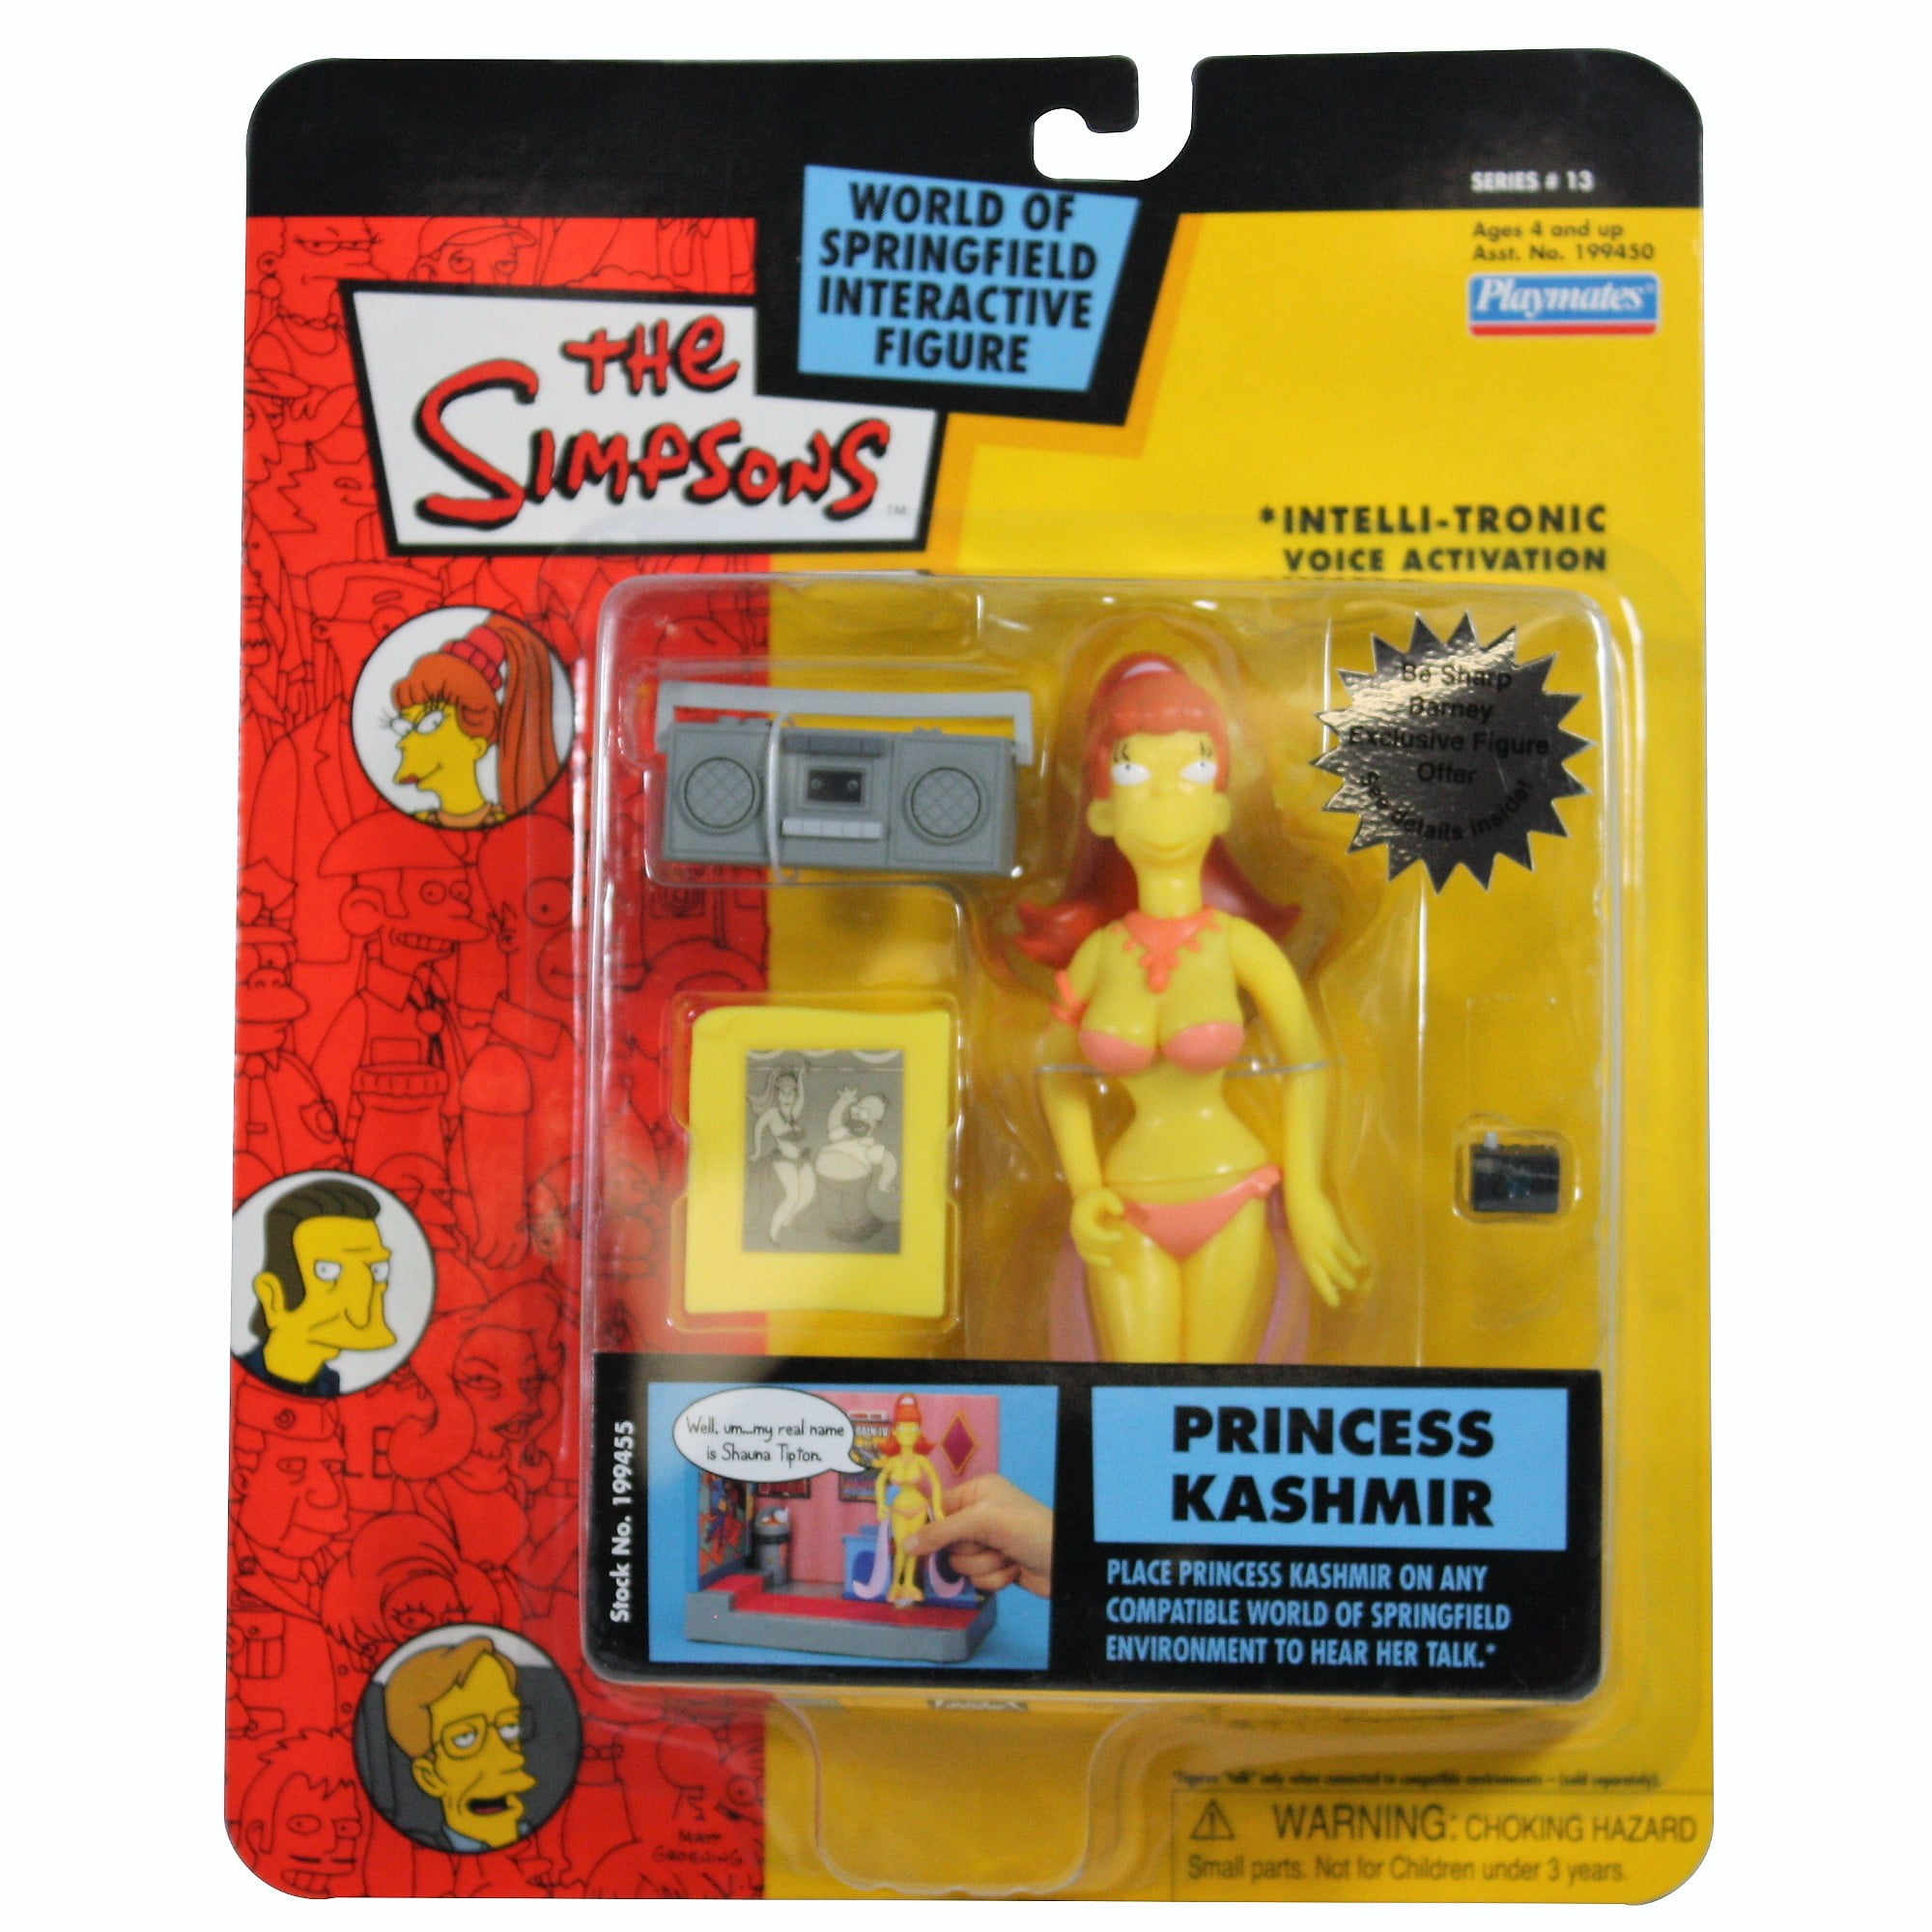 Playmates Toys Simpsons Series 13 Princess Kashmir Action Figure for sale online 